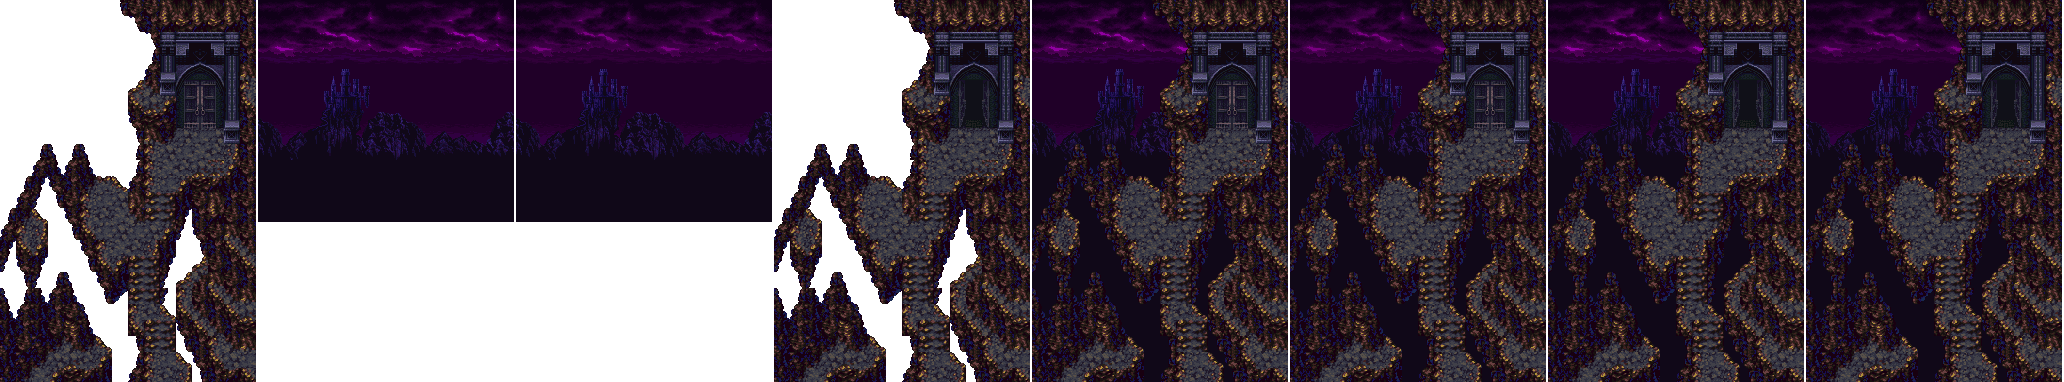 Trials of Mana (JPN) - Dark Castle Back Door